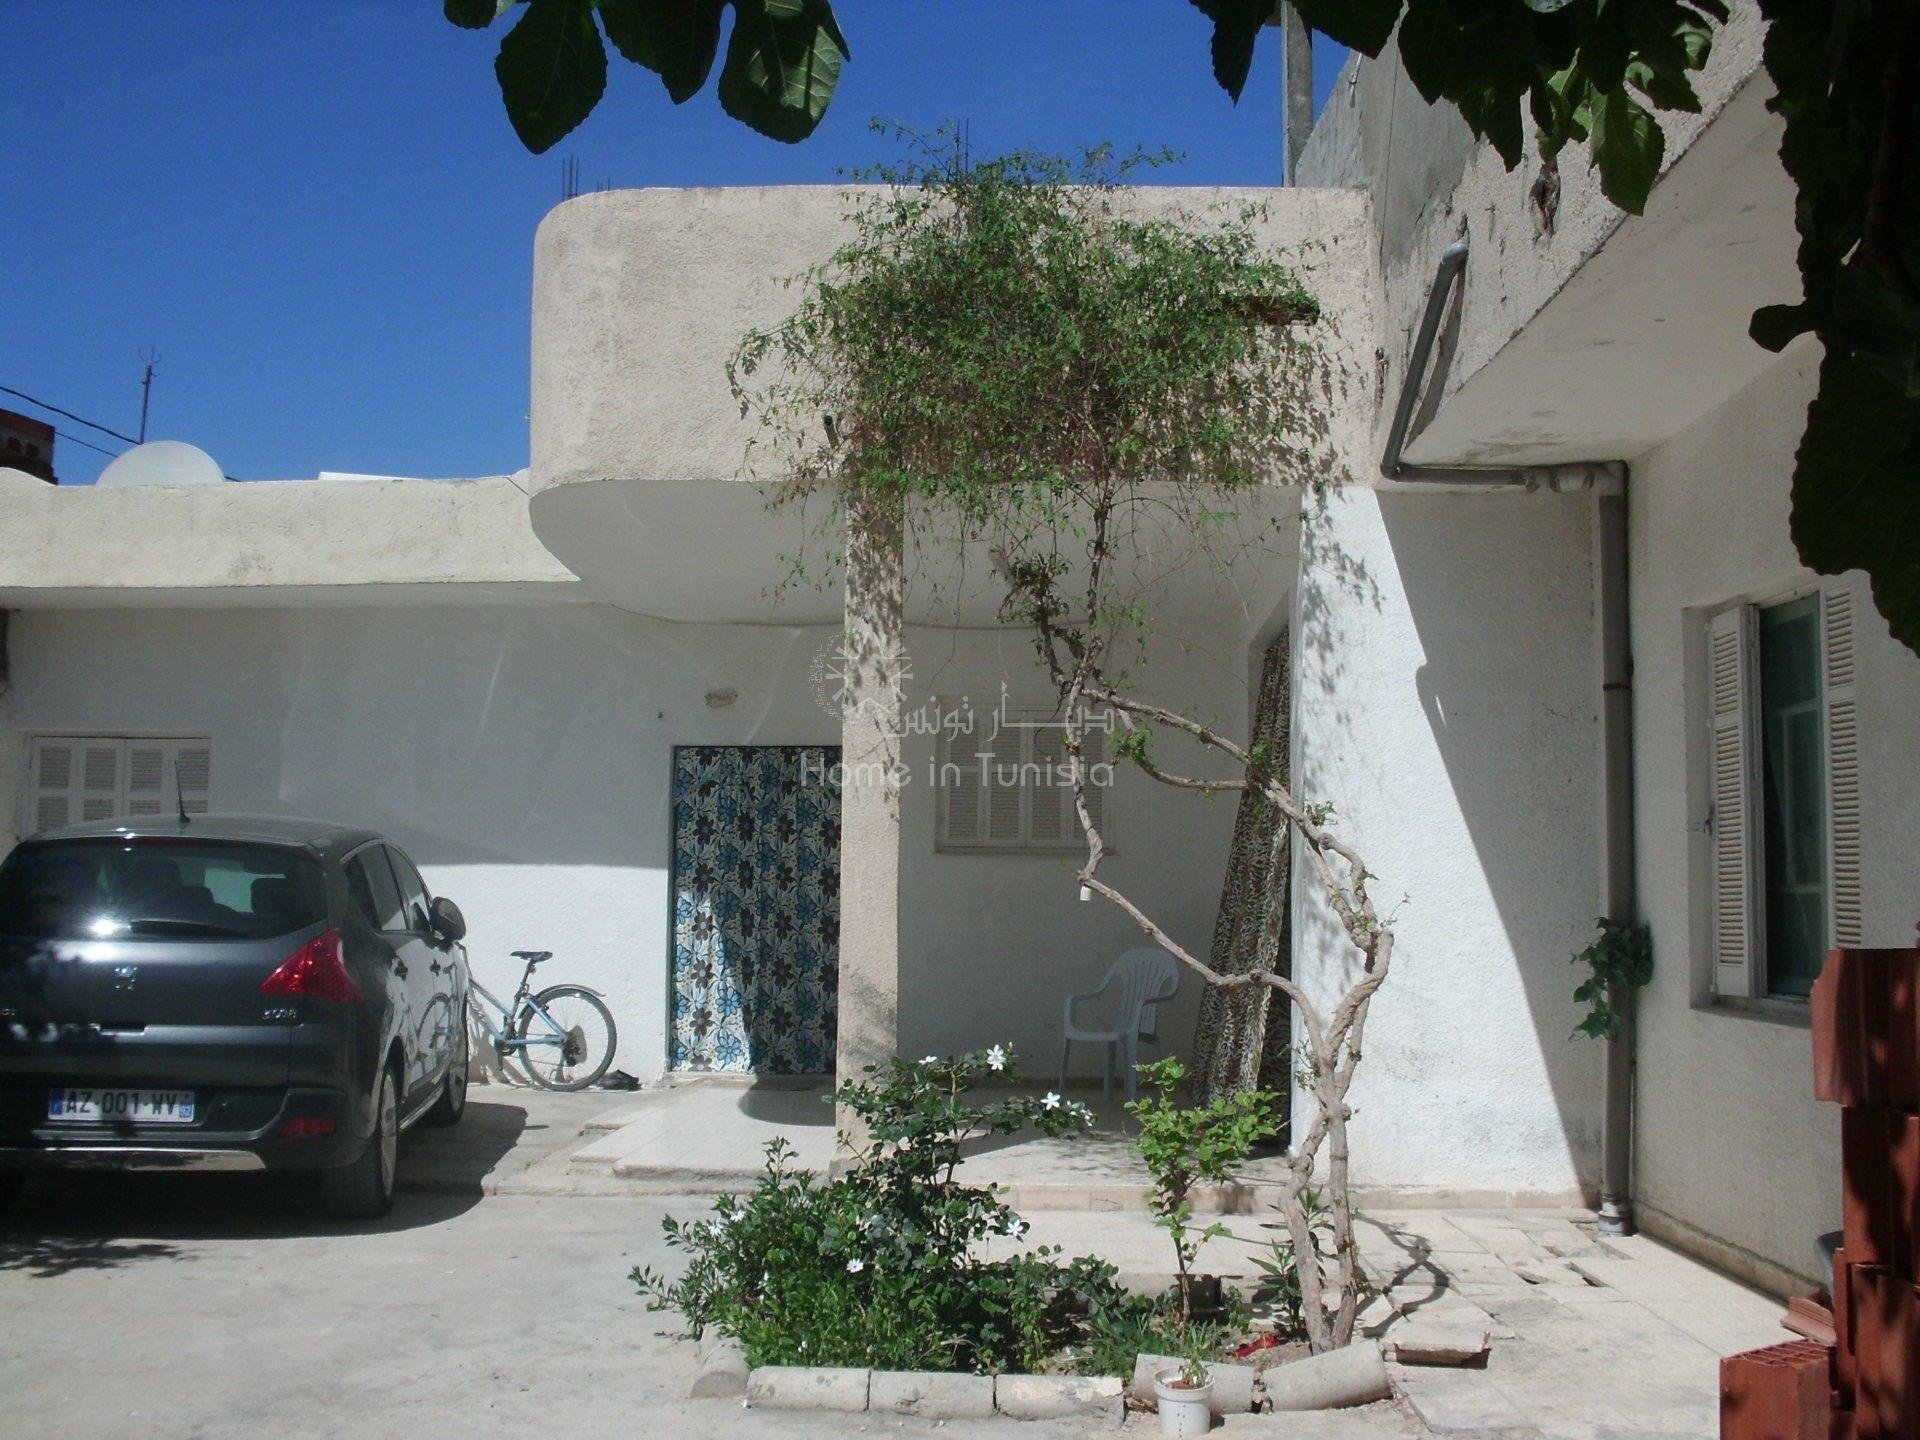 Vente Terrain constructible - Sousse - Tunisie